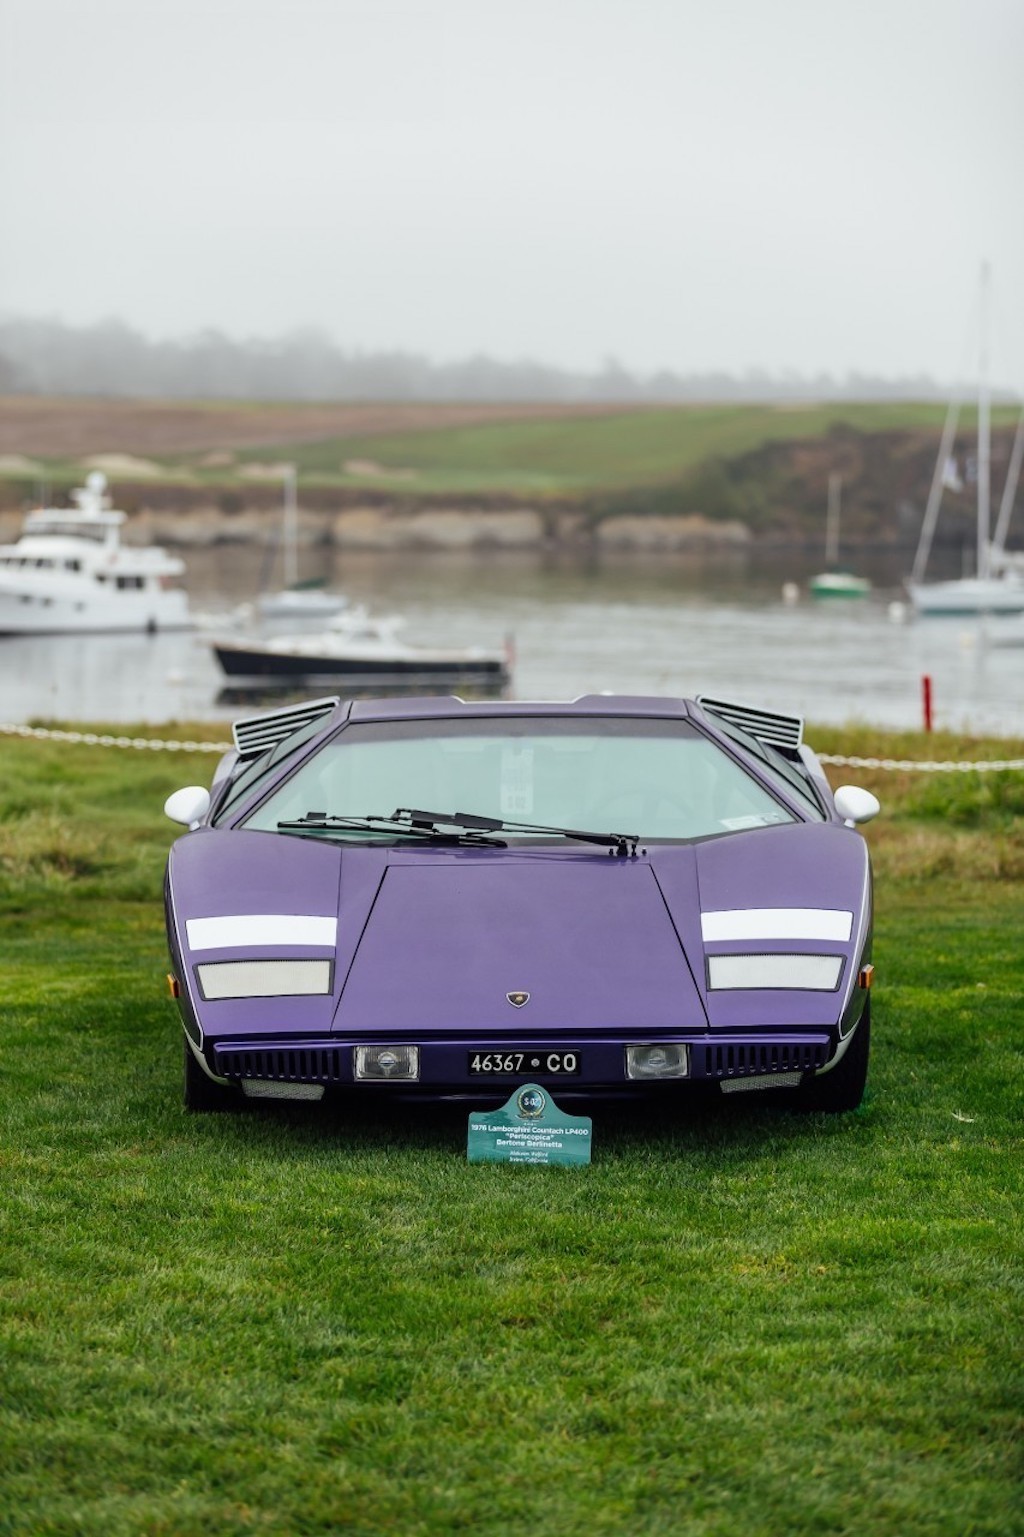 Kỷ niệm 50 năm, dàn siêu xe Lamborghini Countach “bung lụa” khoe dáng tại lễ hội quý tộc Pebble Beach Concours d'Elegance ảnh 4